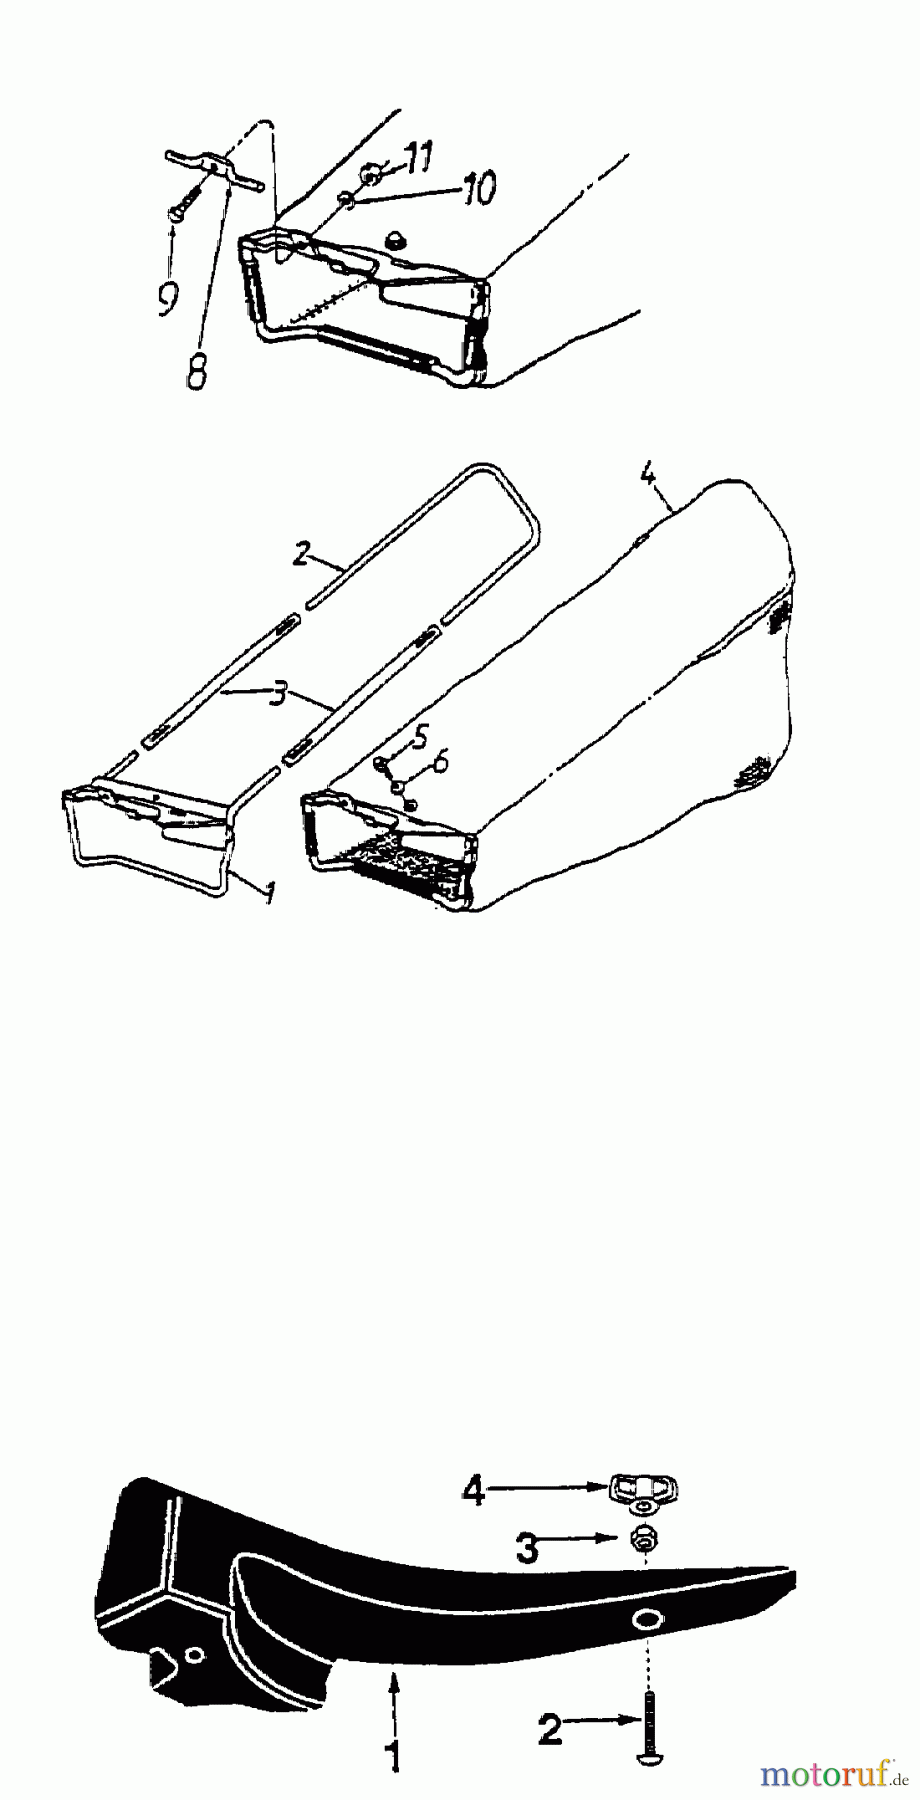  MTD Accèssoires Accèssoires tondeuse Dispositif de réception de l'herbe 110 - pour éjection laterale OEM-190-110  (1998) Sac de réception de l'herbe, Bouchon mulching